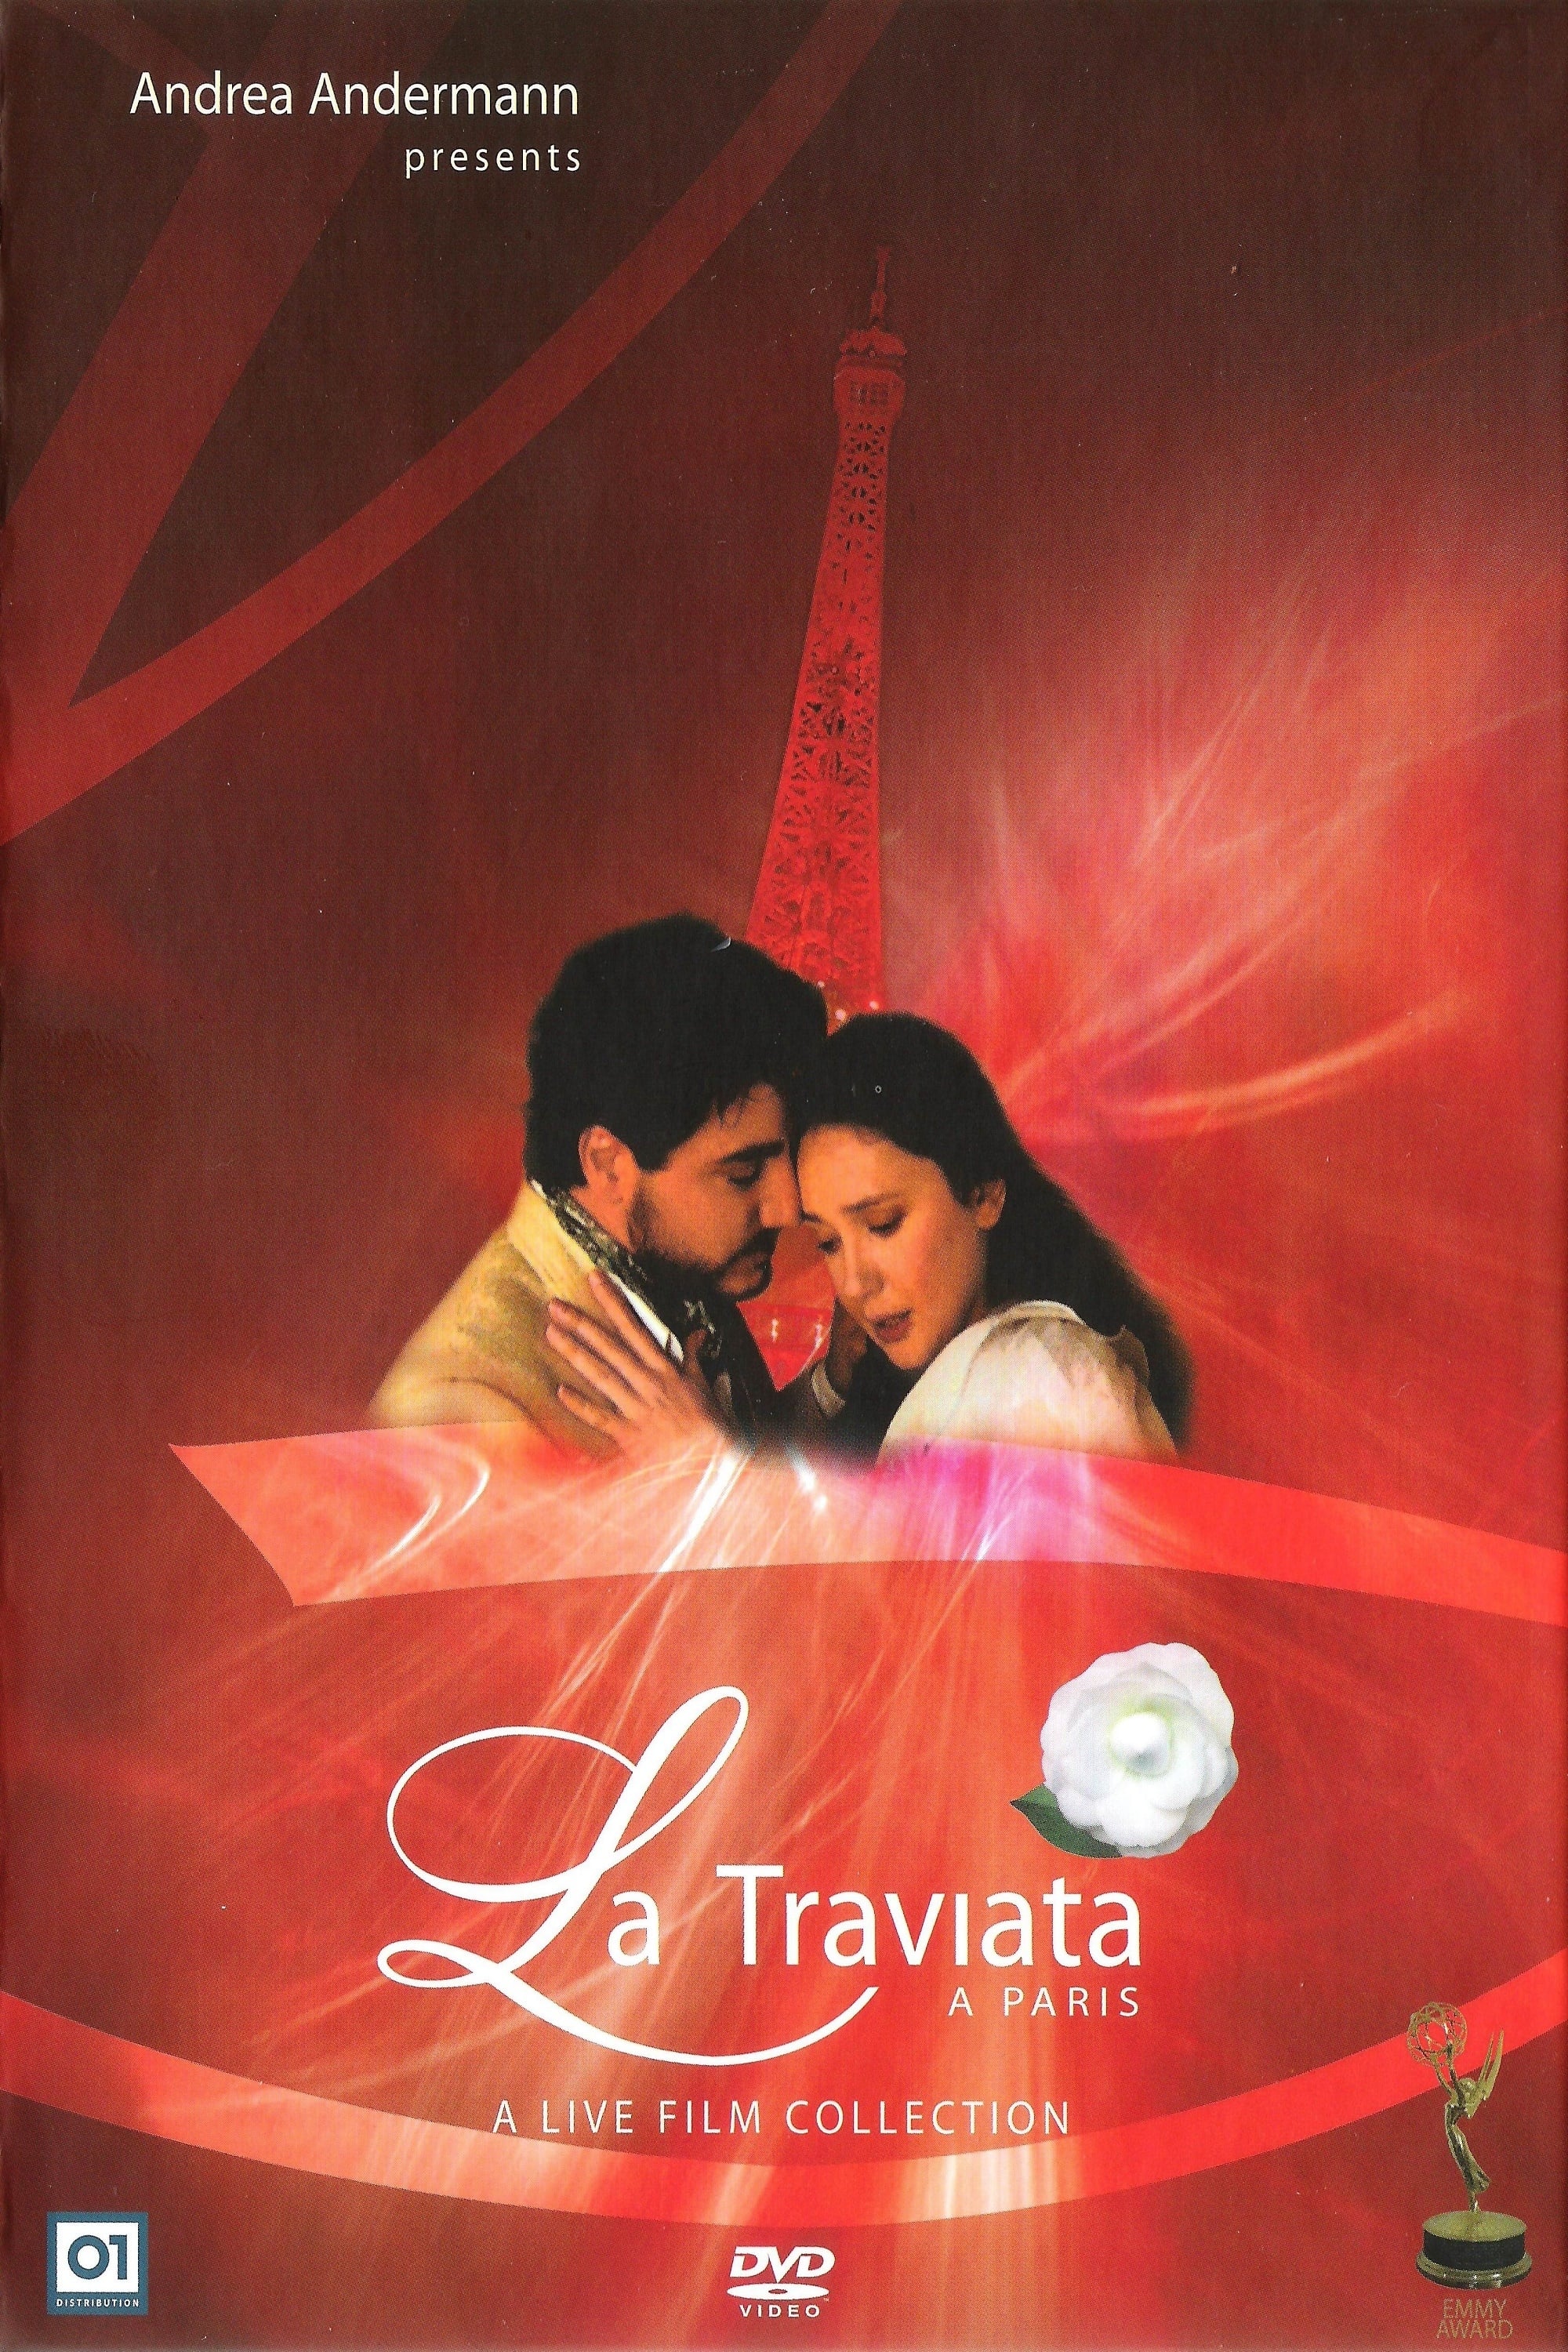 La Traviata a Paris